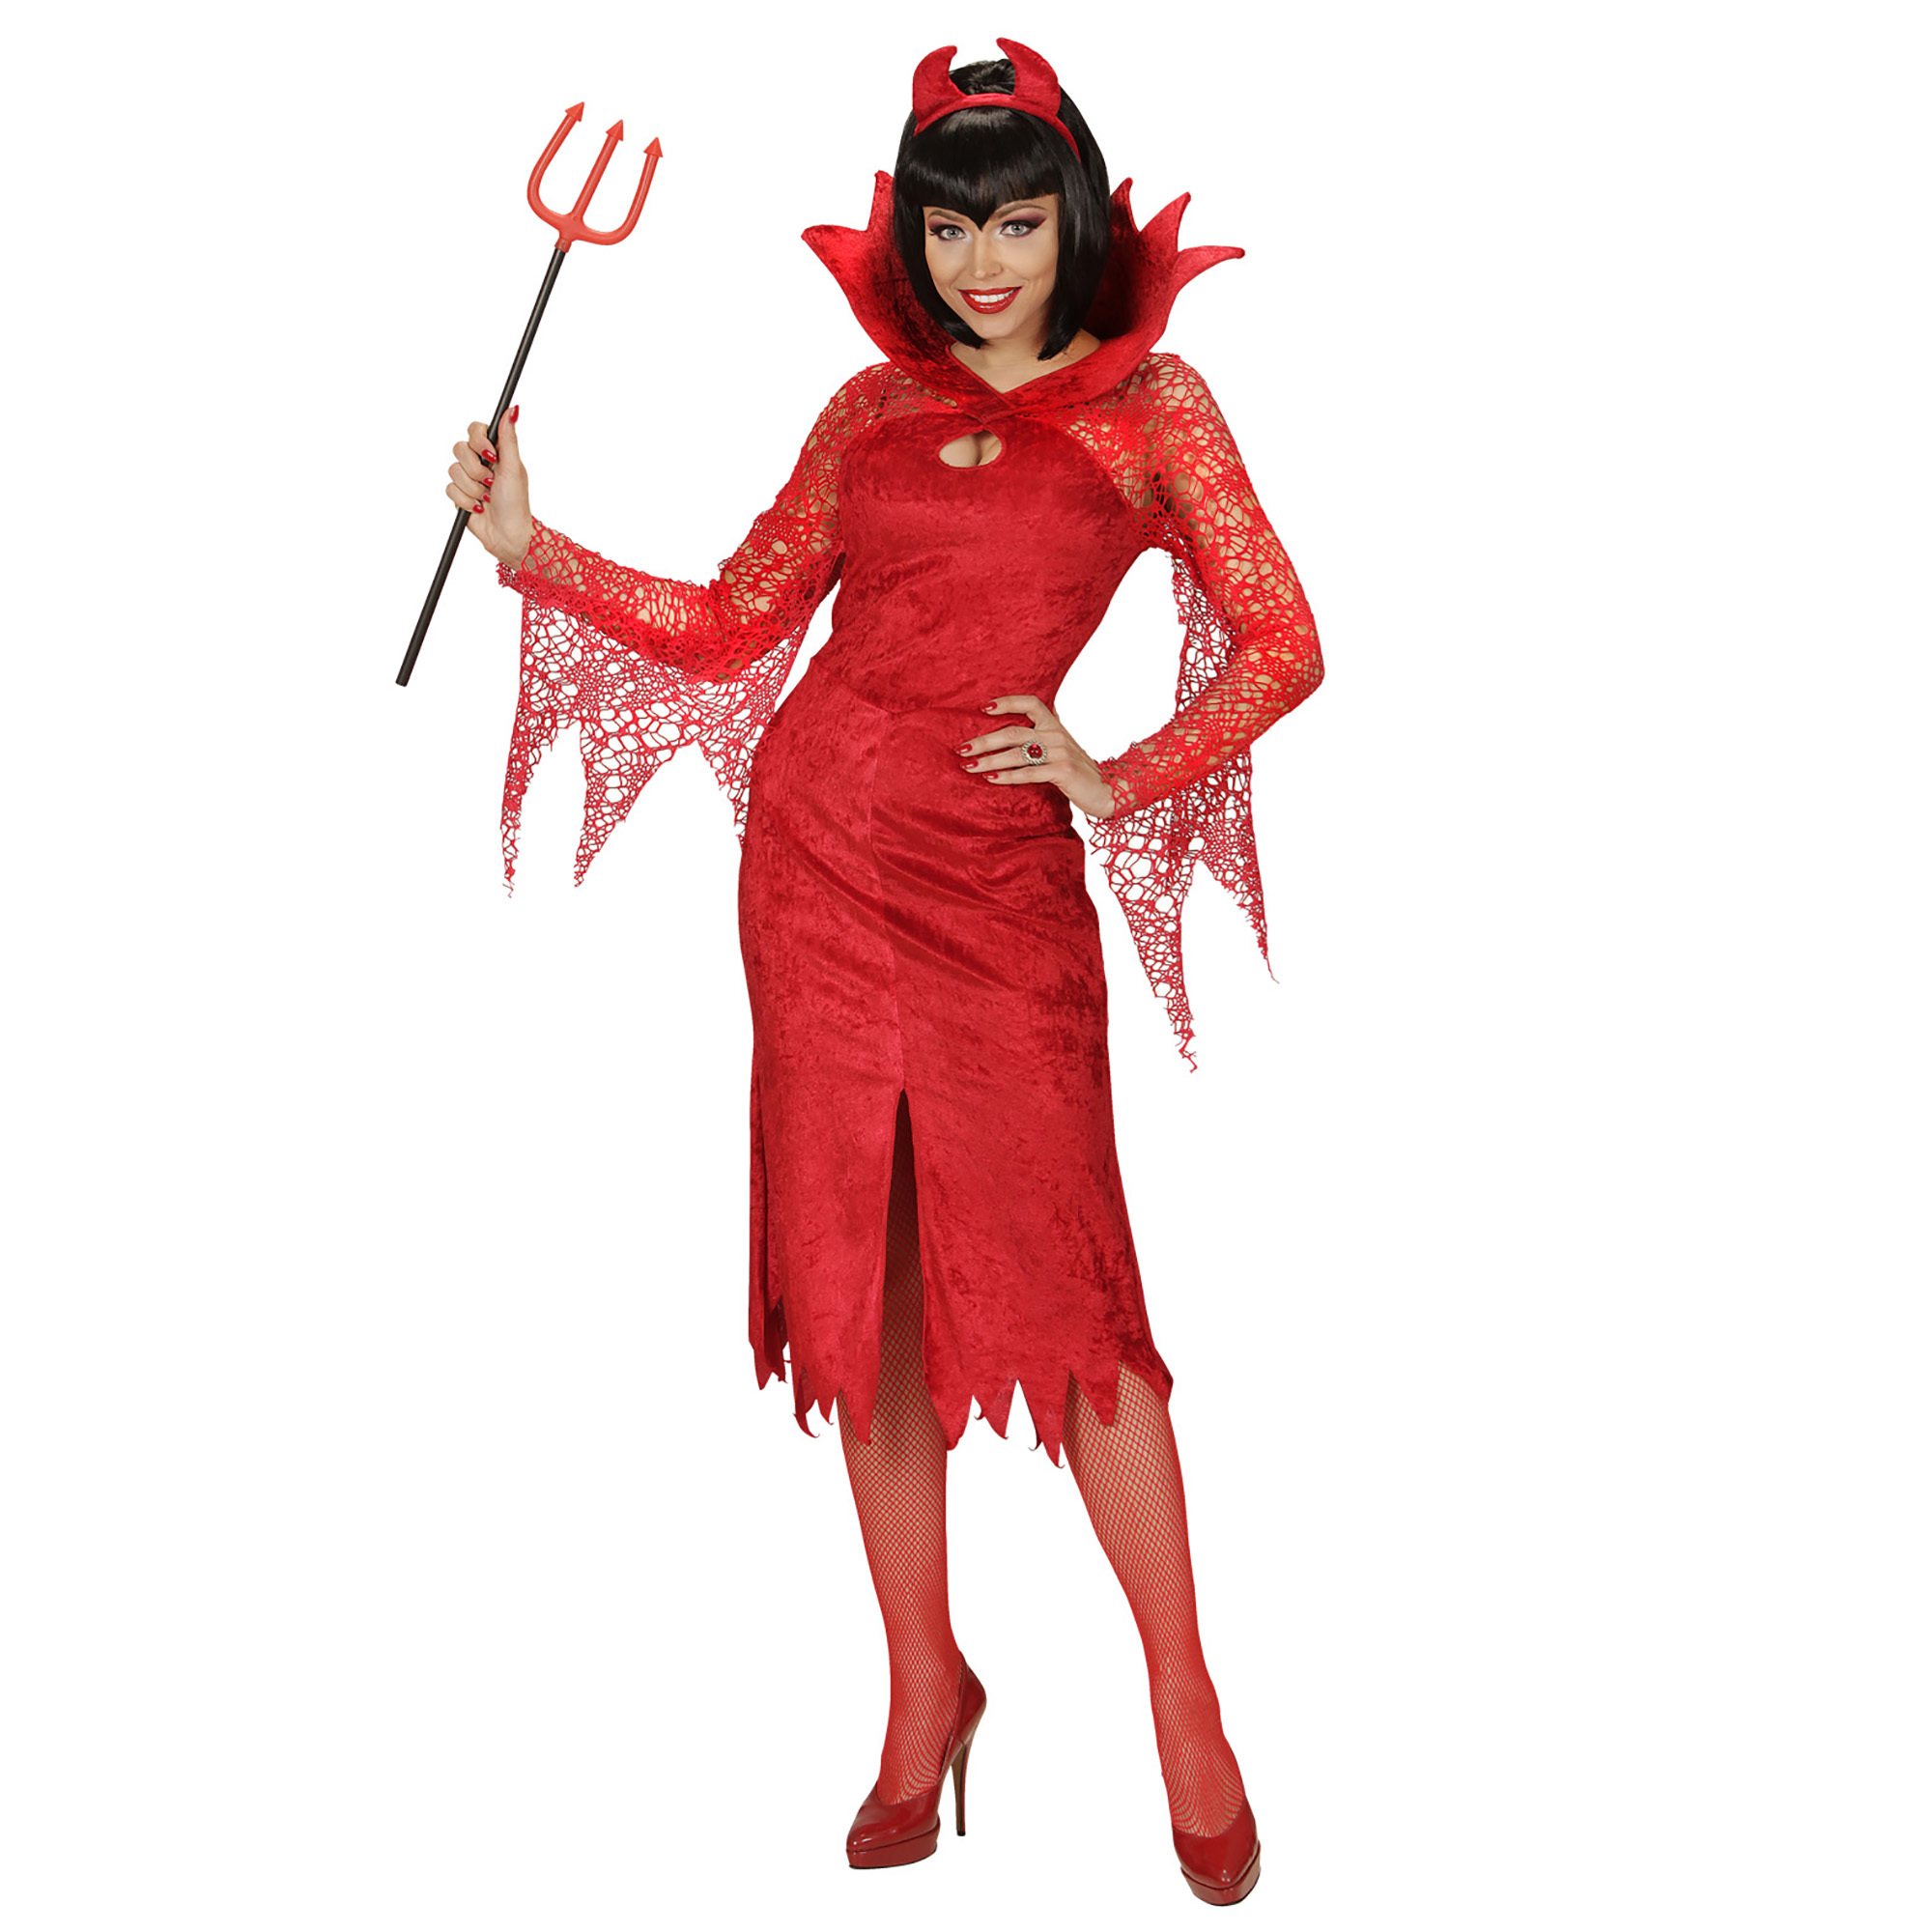 Duivels rode jurk dame